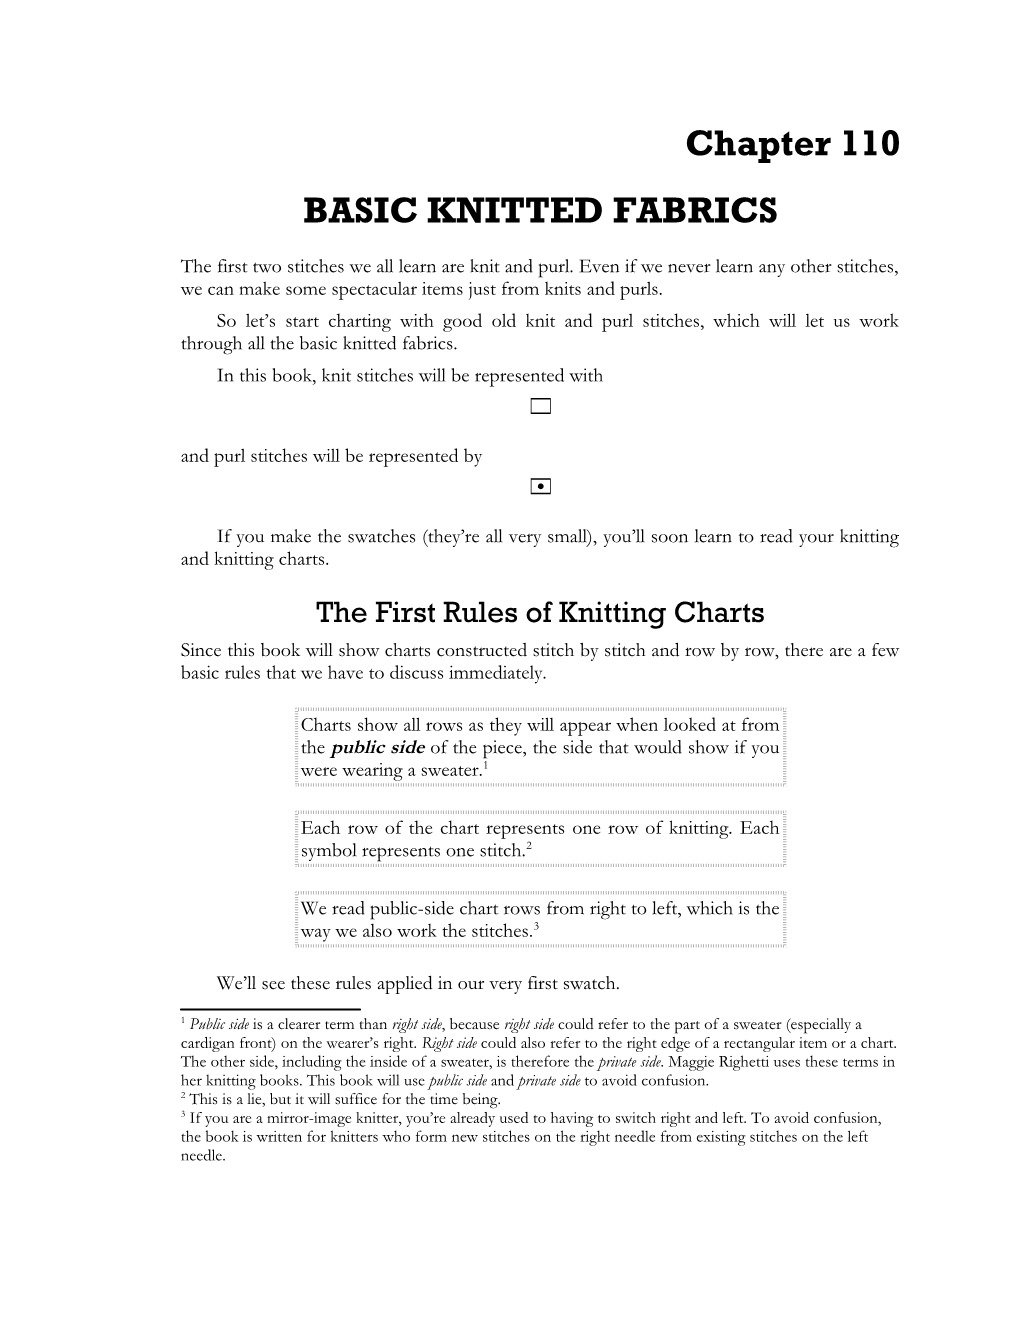 Basic Knitted Fabrics